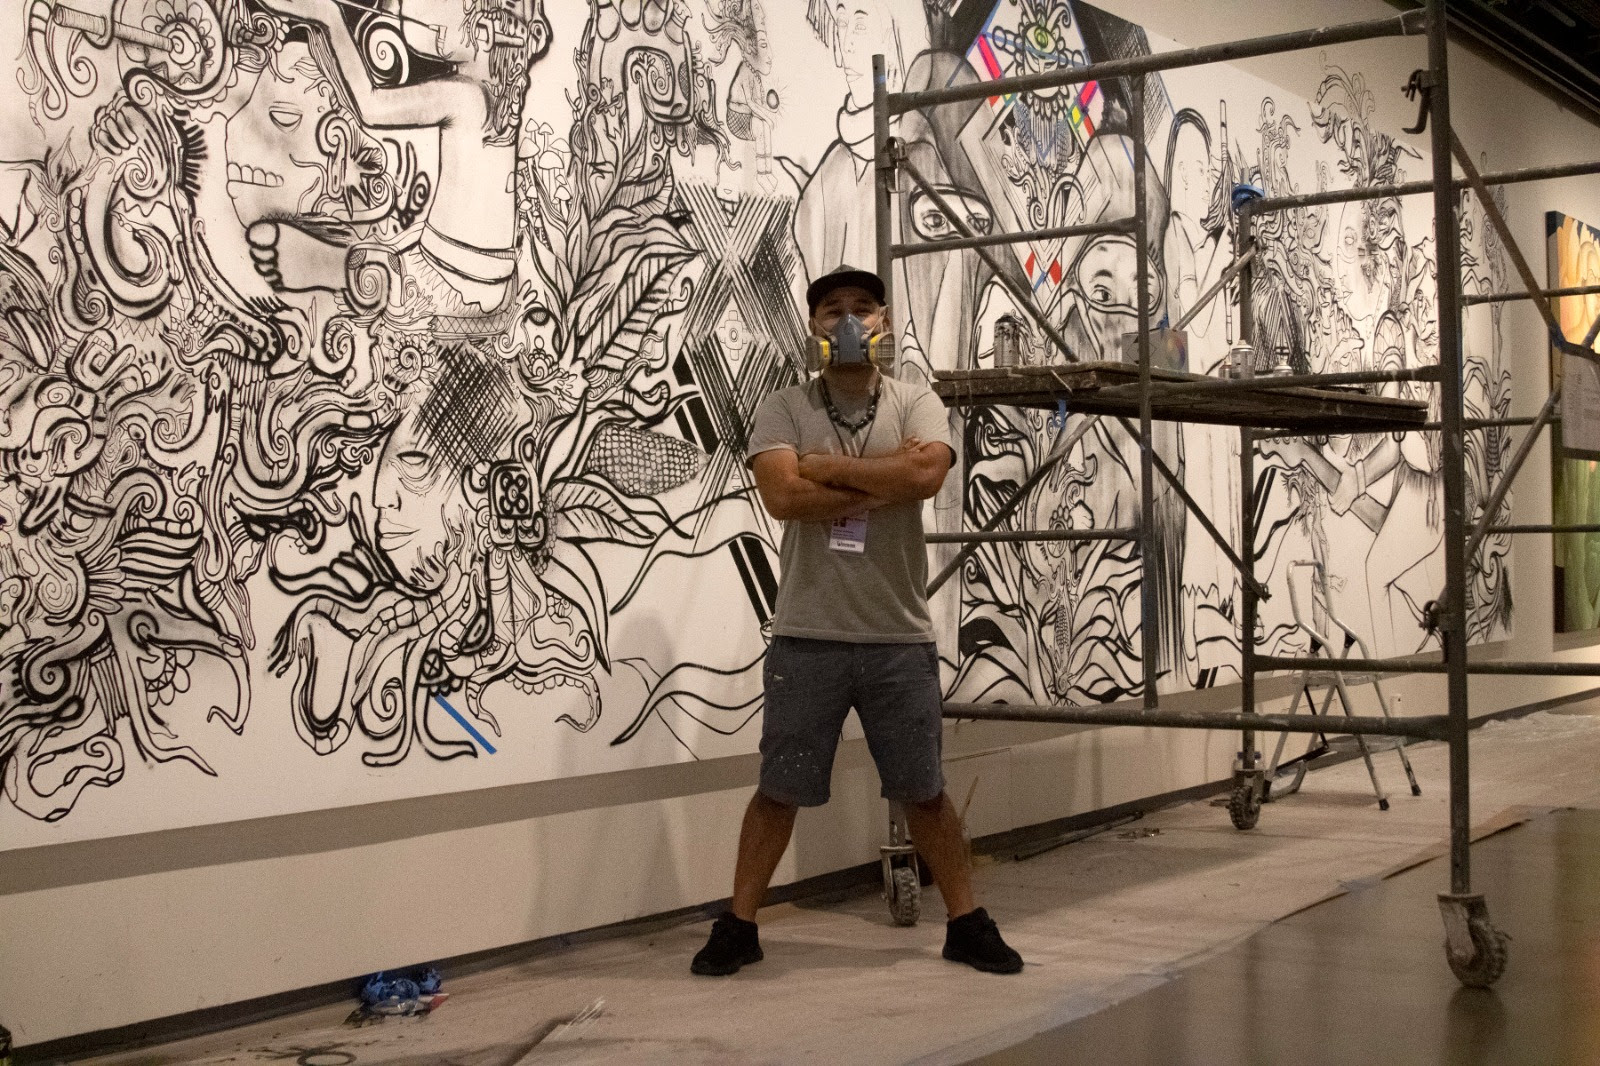 Colegio San Ildefonso ofrece mirada a la realidad maya en sala “Muralismo y Resistencia”